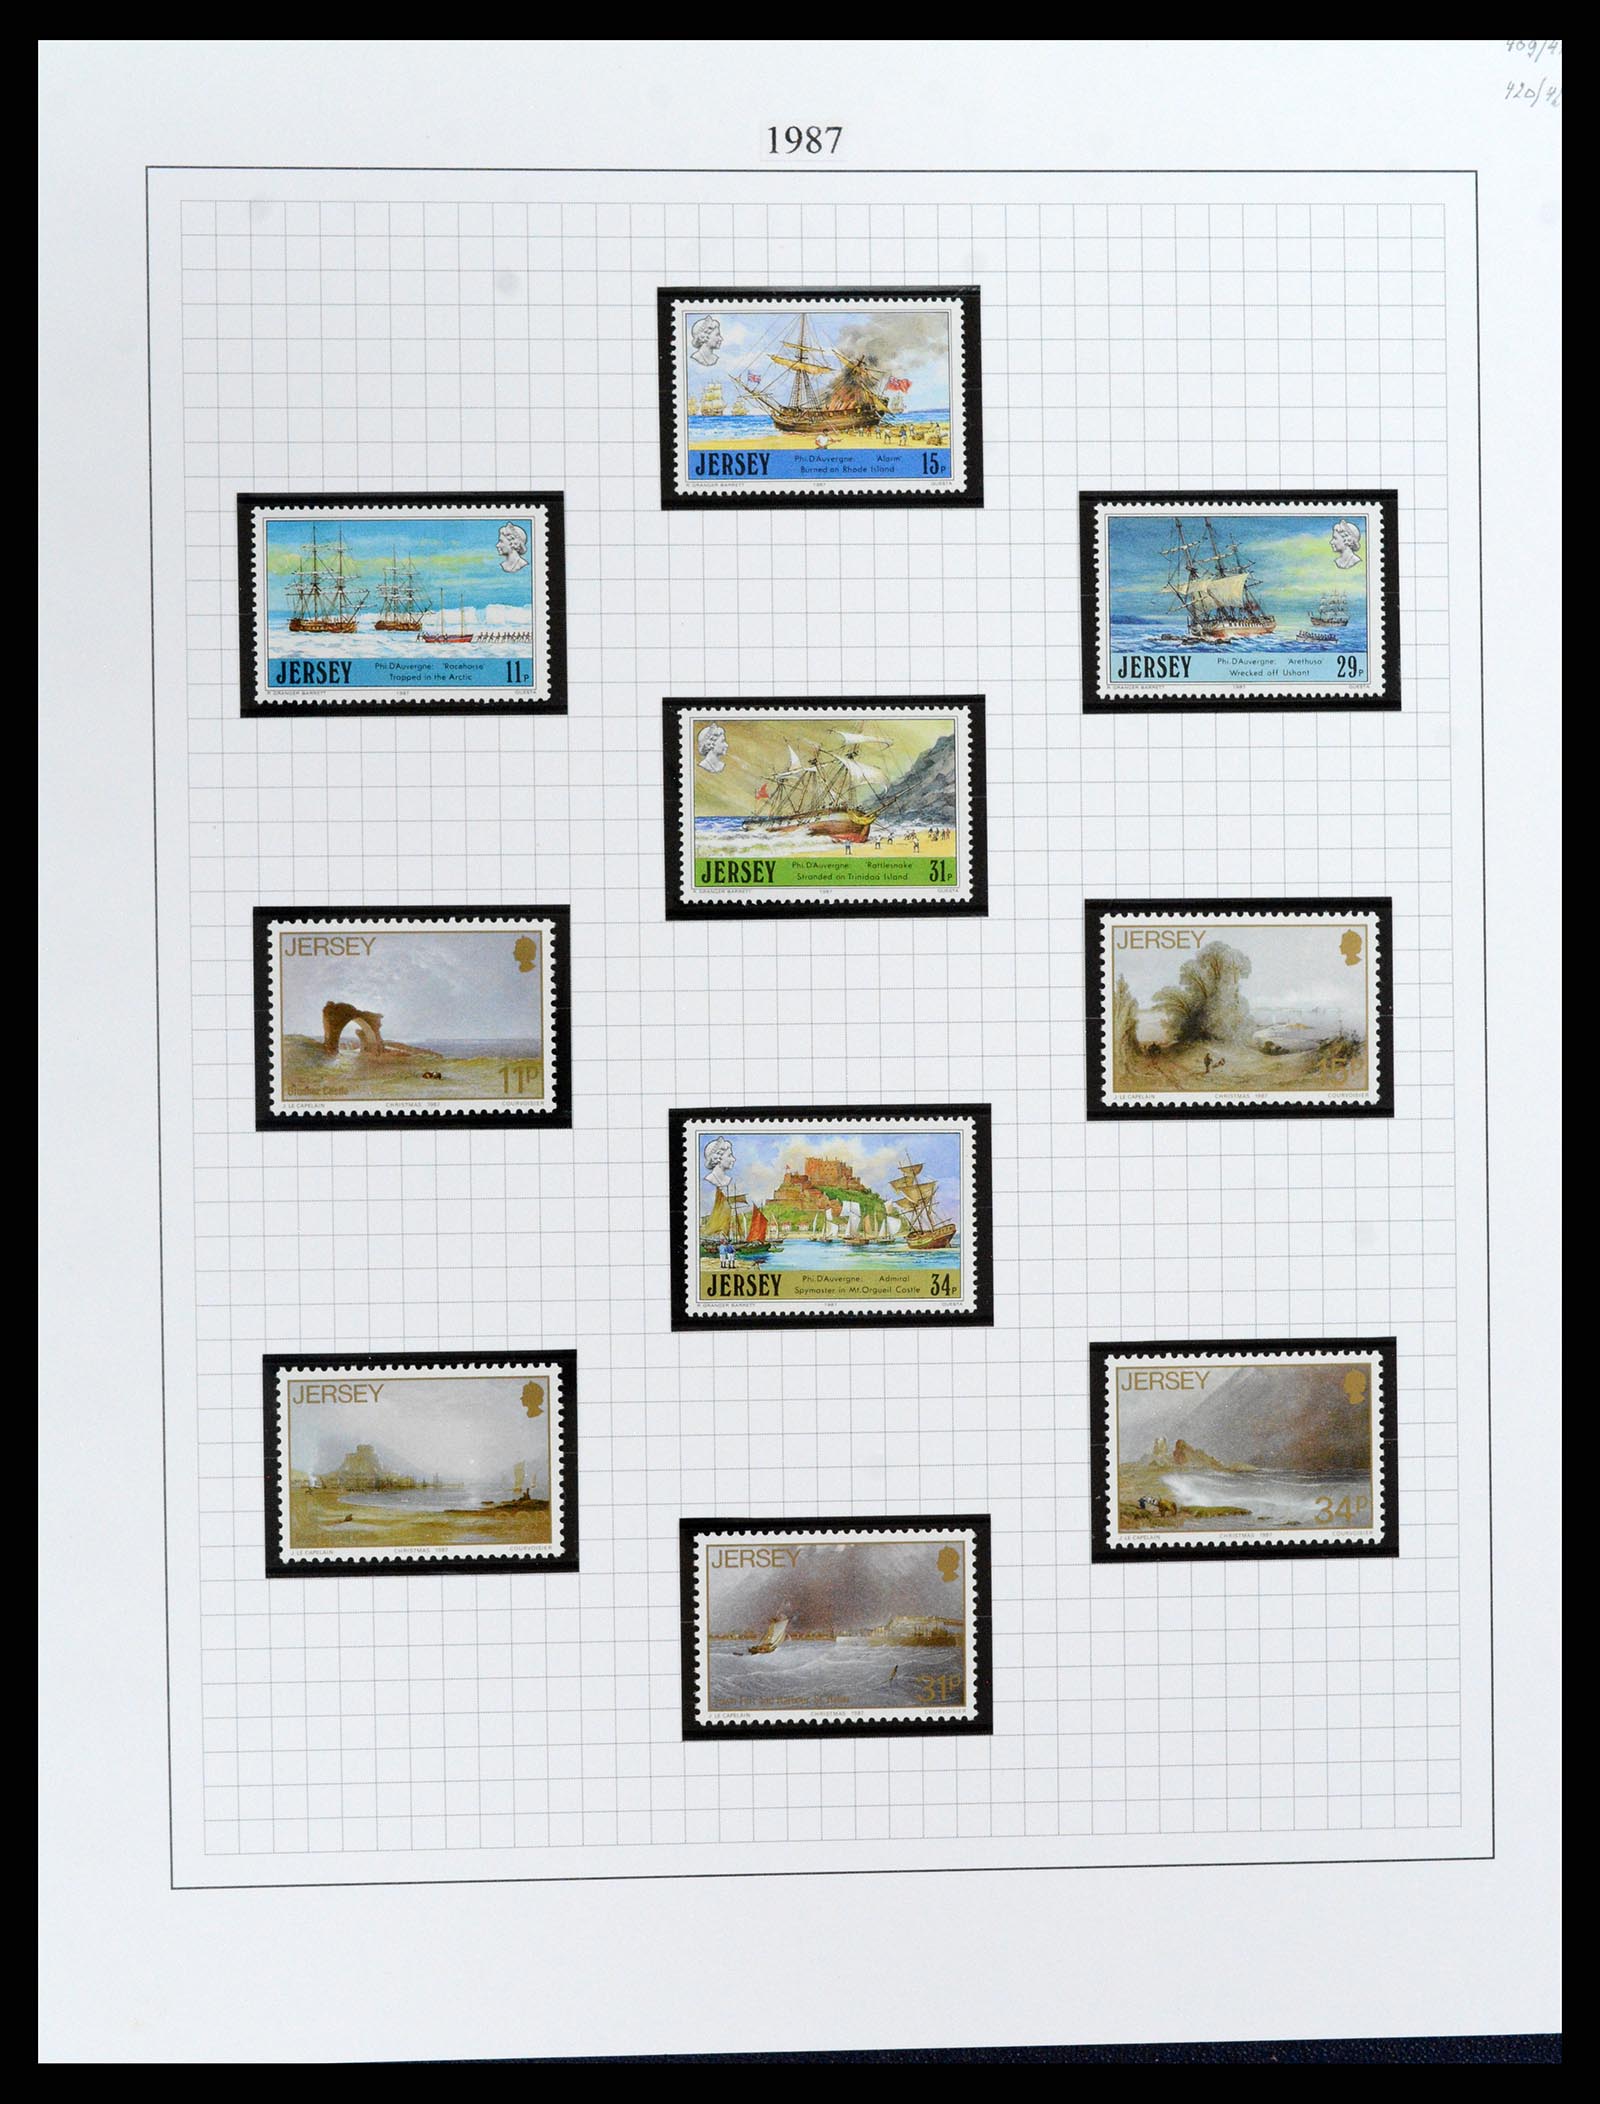 37370 040 - Postzegelverzameling 37370 Kanaaleilanden 1969-2007.